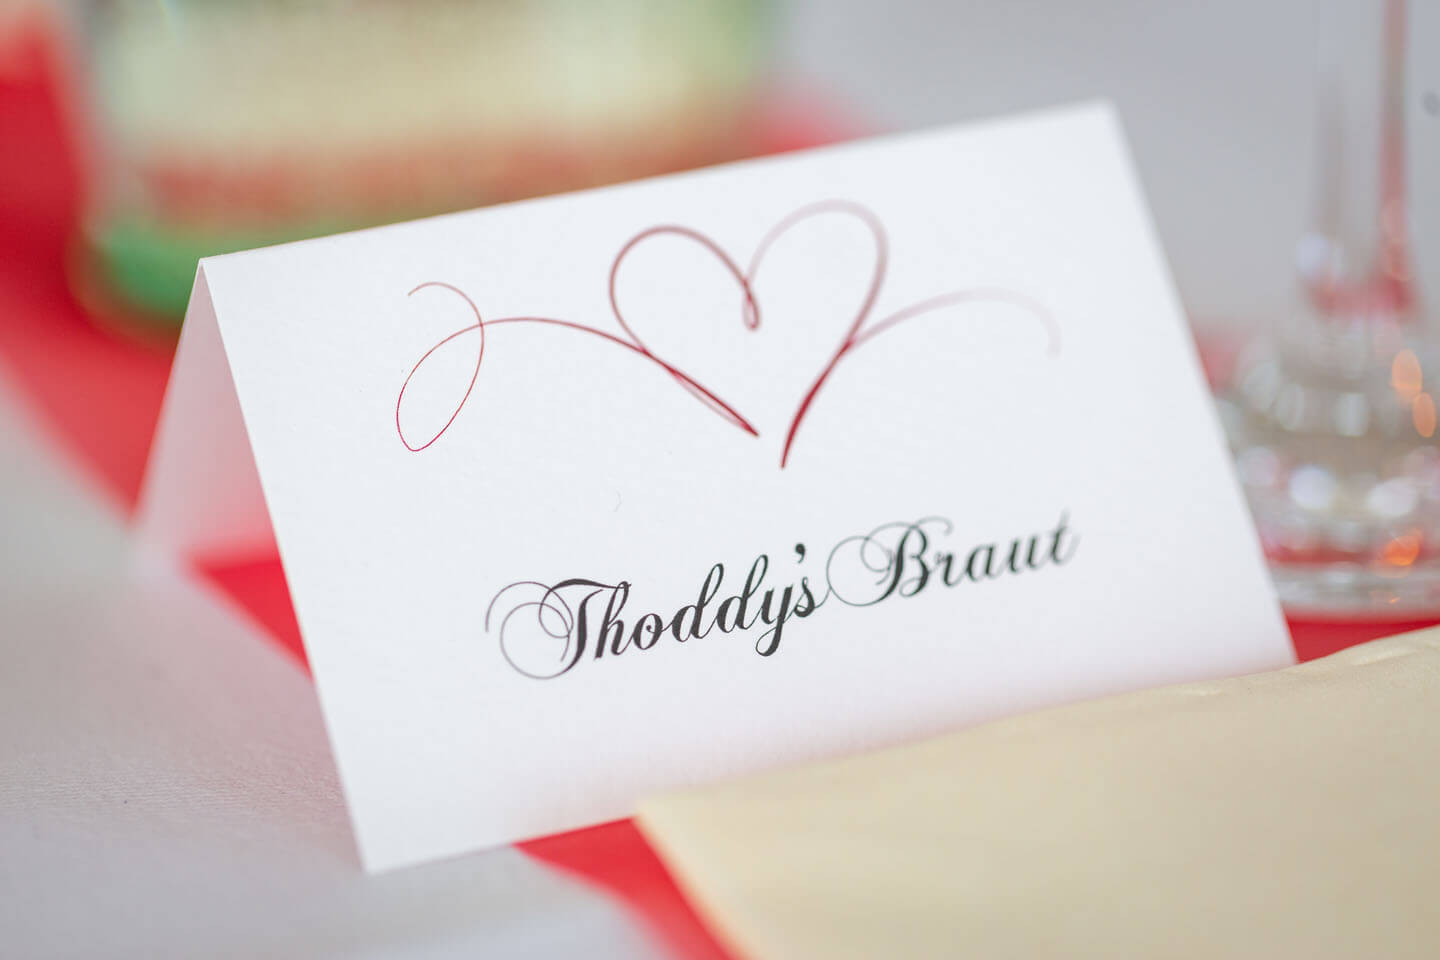 Tischkarte mit der Aufschrift "Toddys Braut"